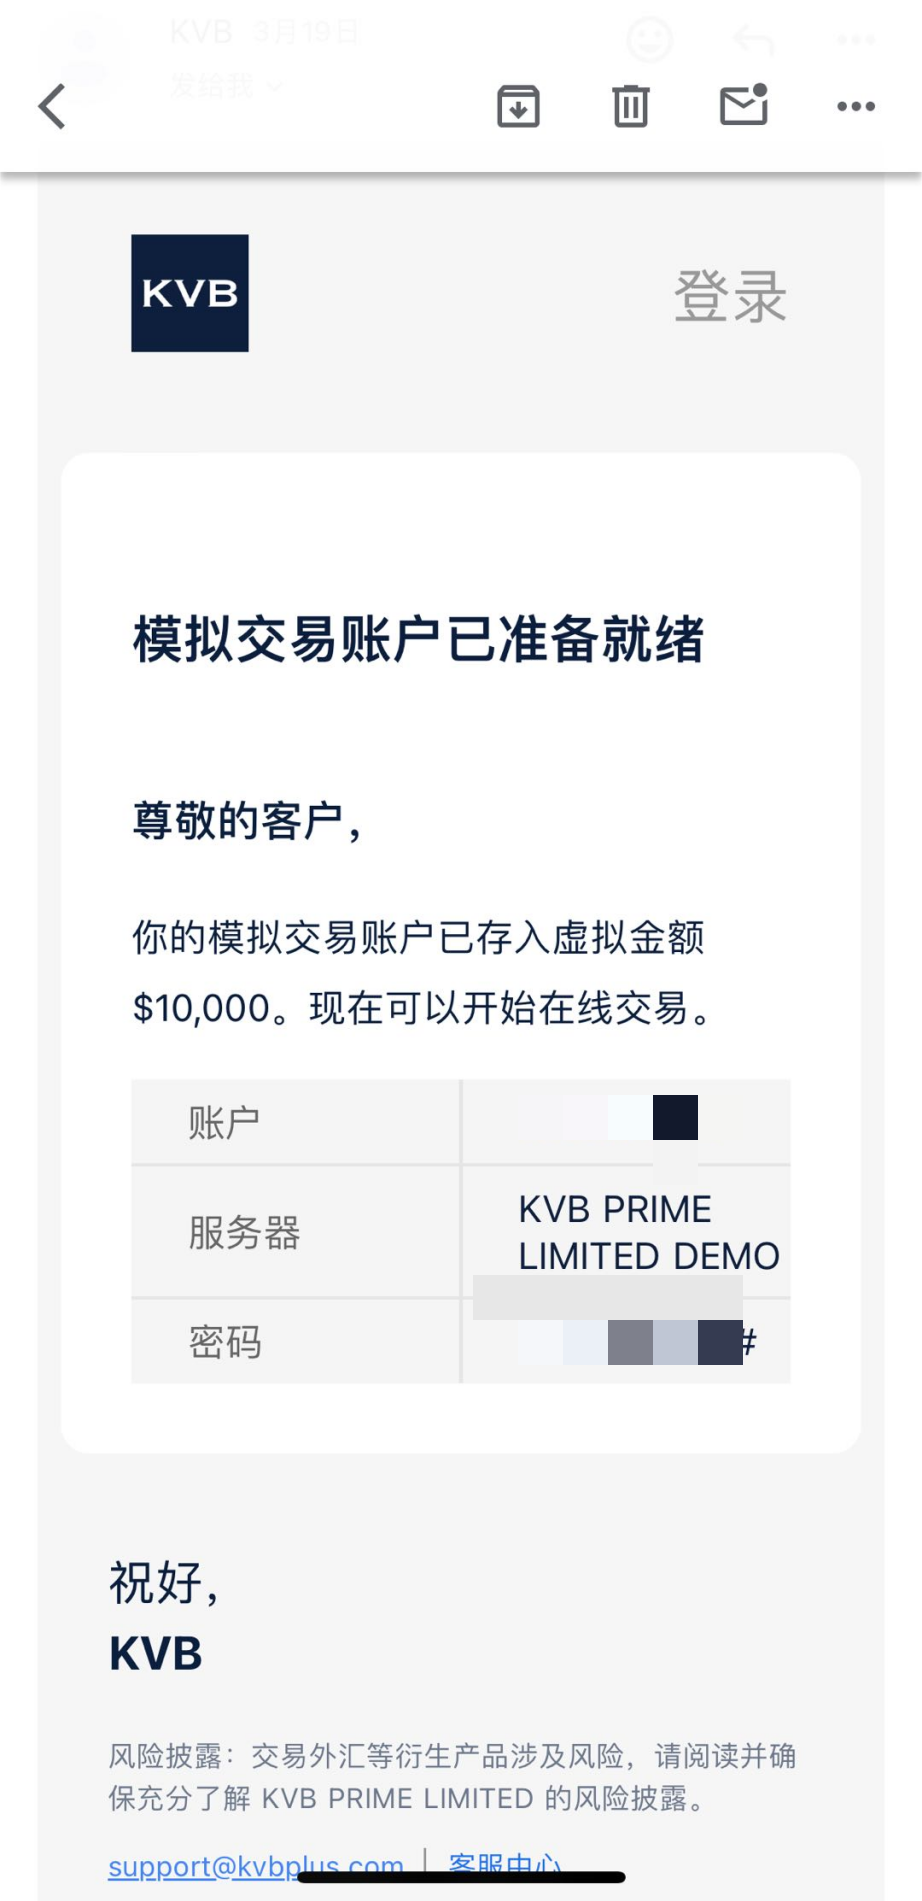 一个用户视角下的KVB交易平台体验测评